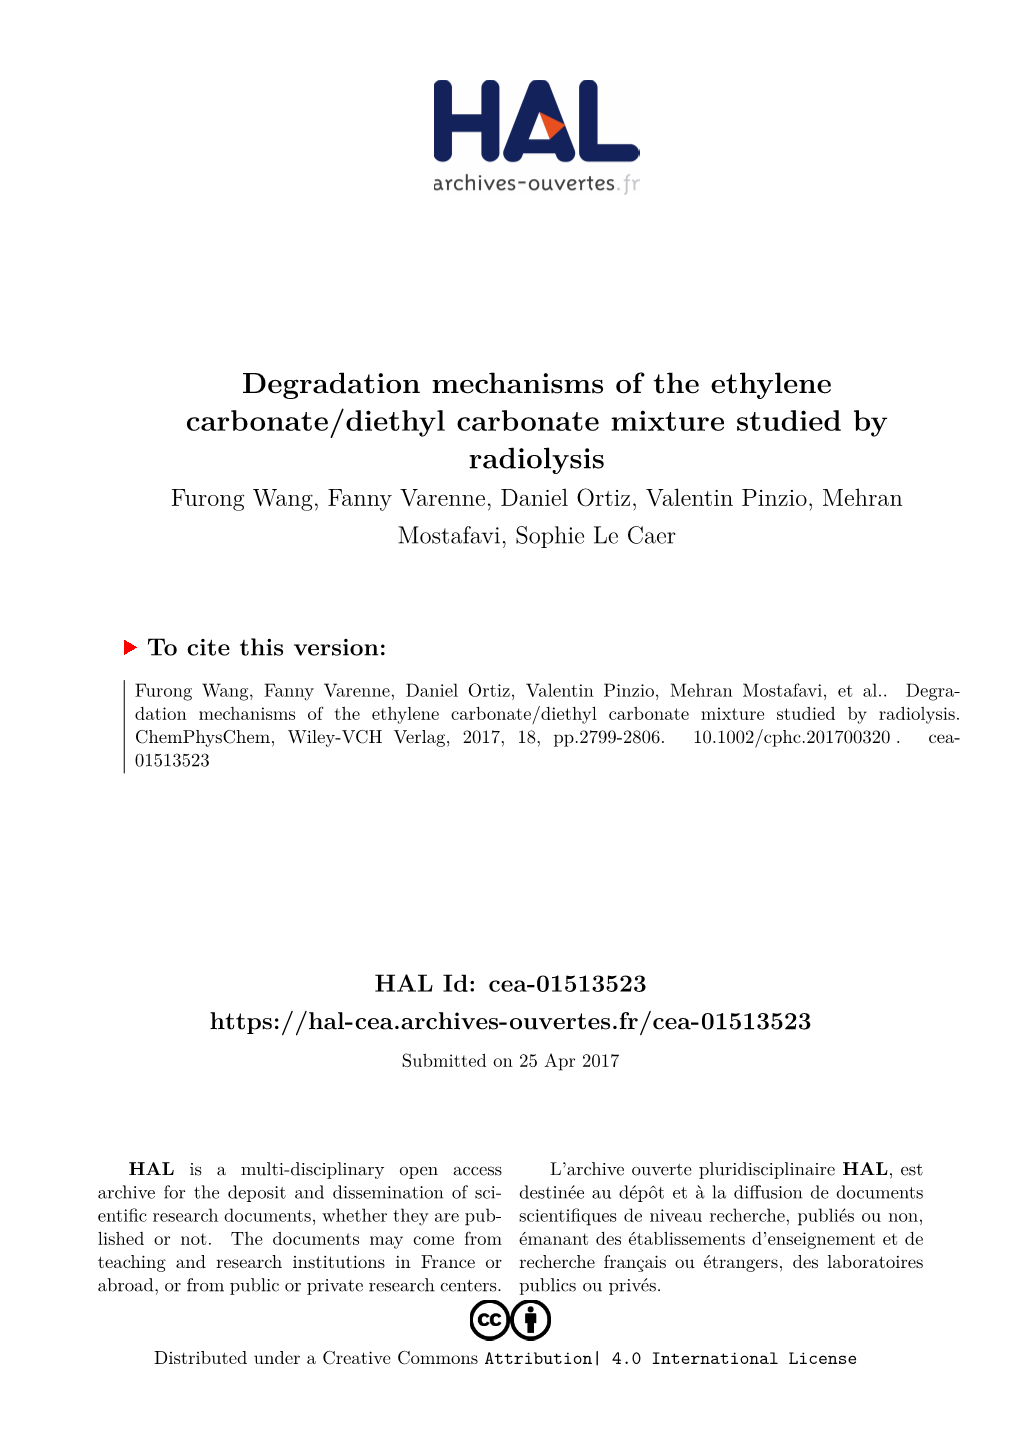 Degradation Mechanisms of the Ethylene Carbonate/Diethyl